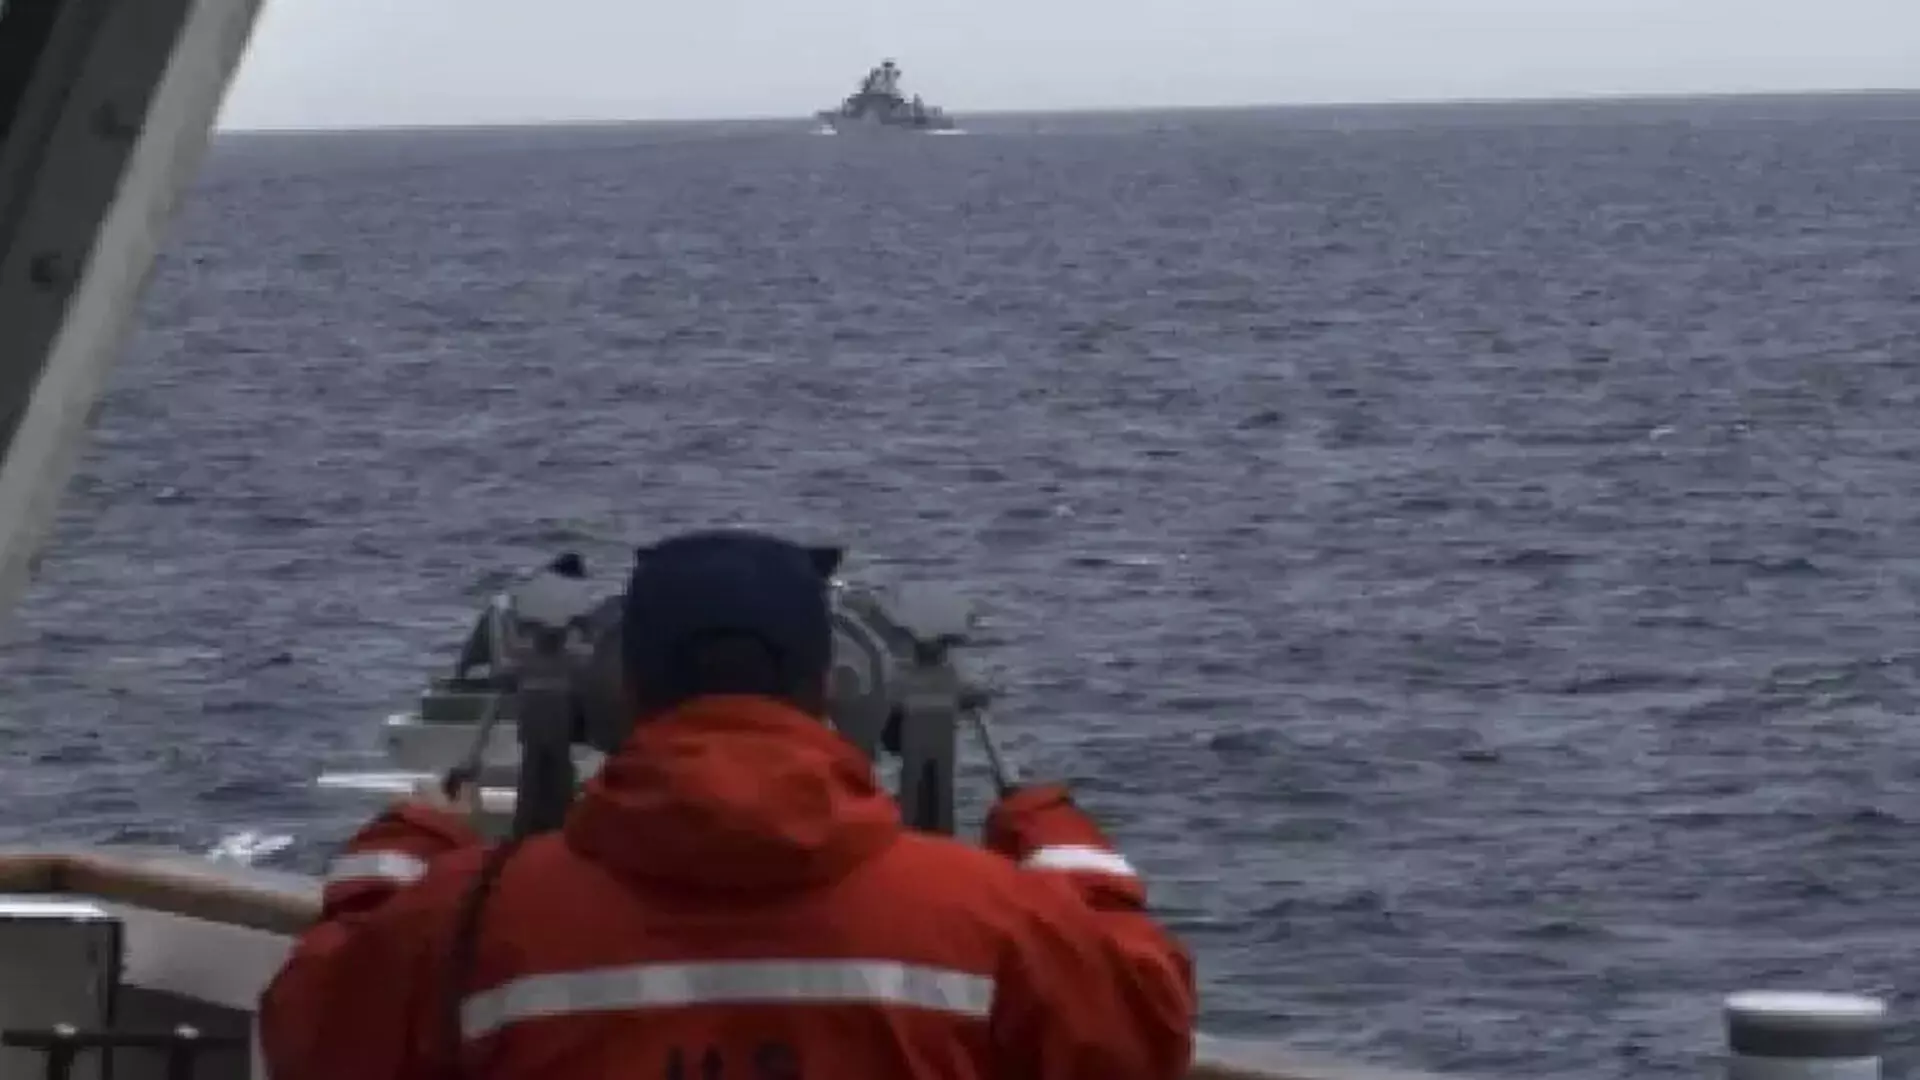 US तटरक्षक बल के गश्ती दल ने अलास्का द्वीप के पास चीनी नौसैनिक जहाज देखे